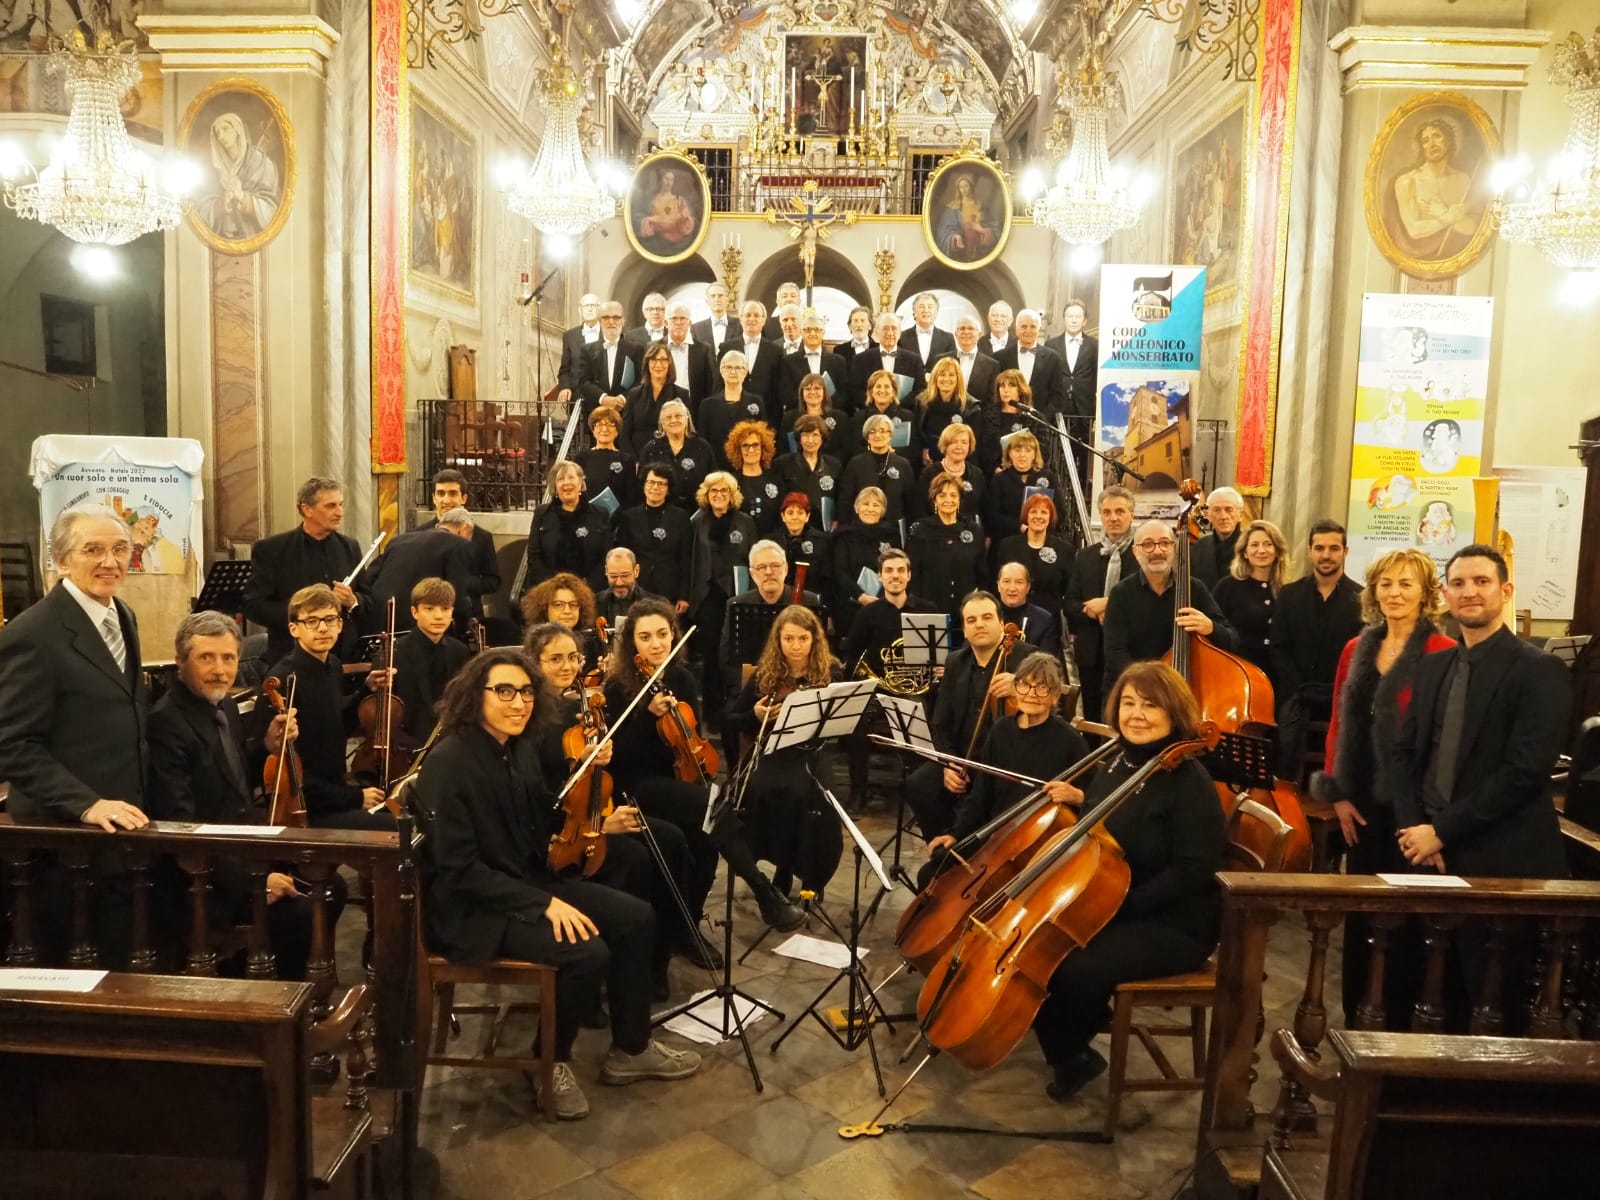 Coro Polifonico Monserrato, accompagnato dall’Orchestra Fidei Donum